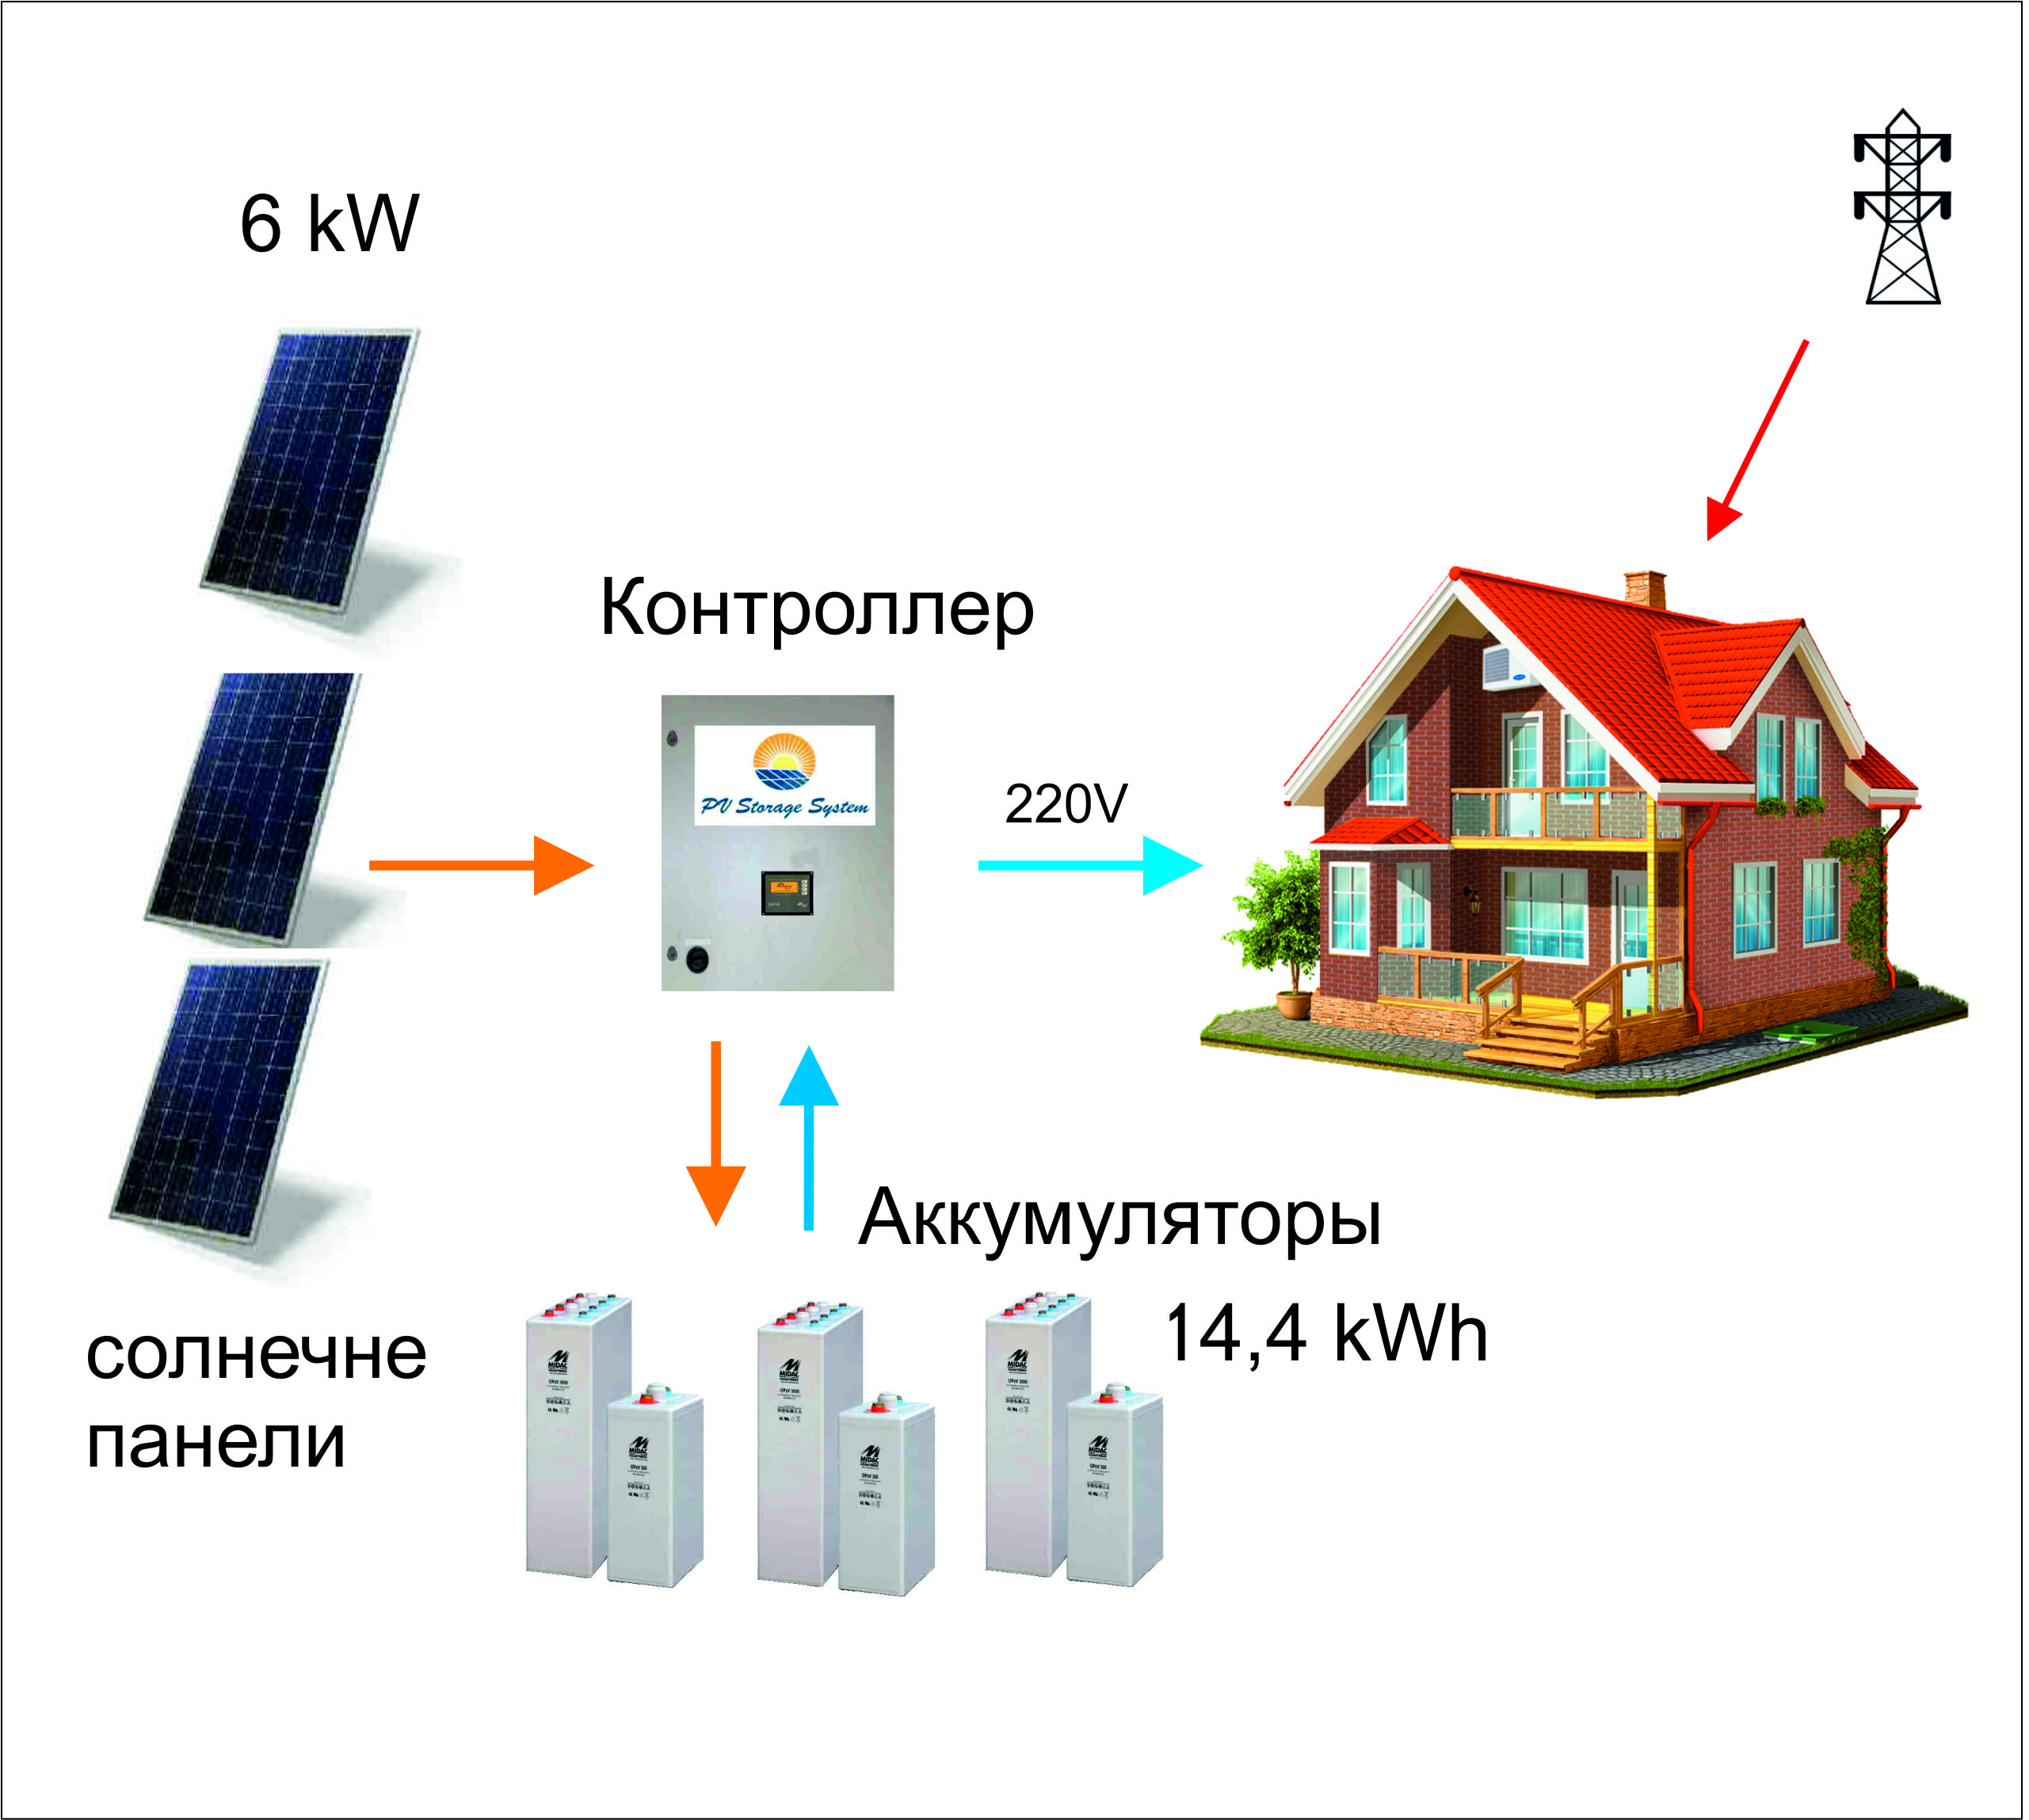 Контроллер для солнечной электростанции пиковой мощности 6 кВт.